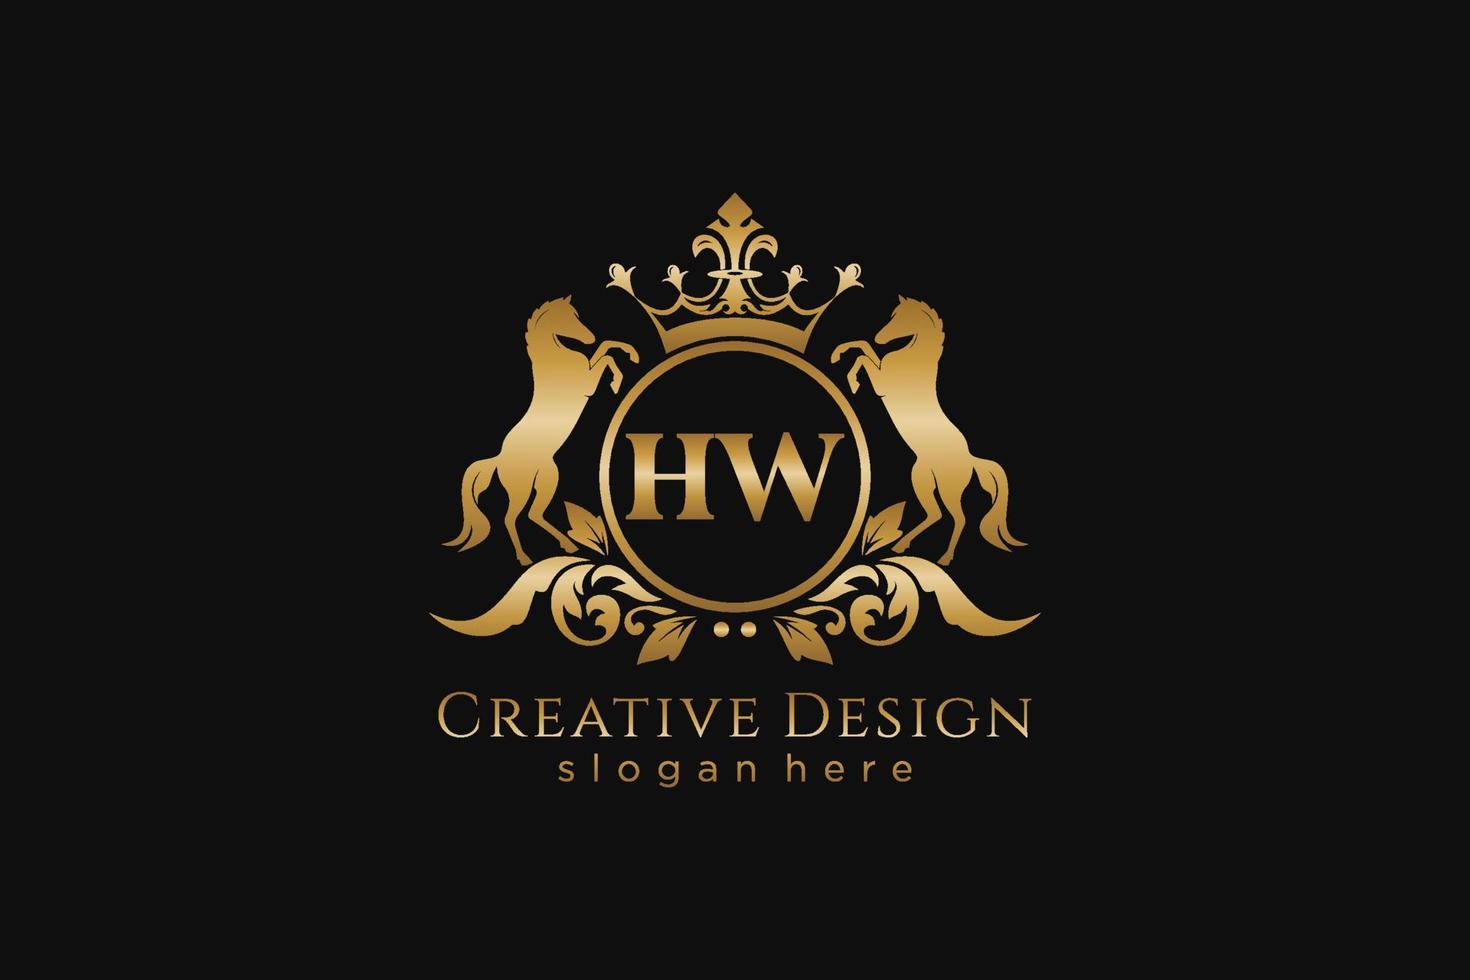 crista dourada retrô inicial hw com círculo e dois cavalos, modelo de crachá com pergaminhos e coroa real - perfeito para projetos de marca luxuosos vetor